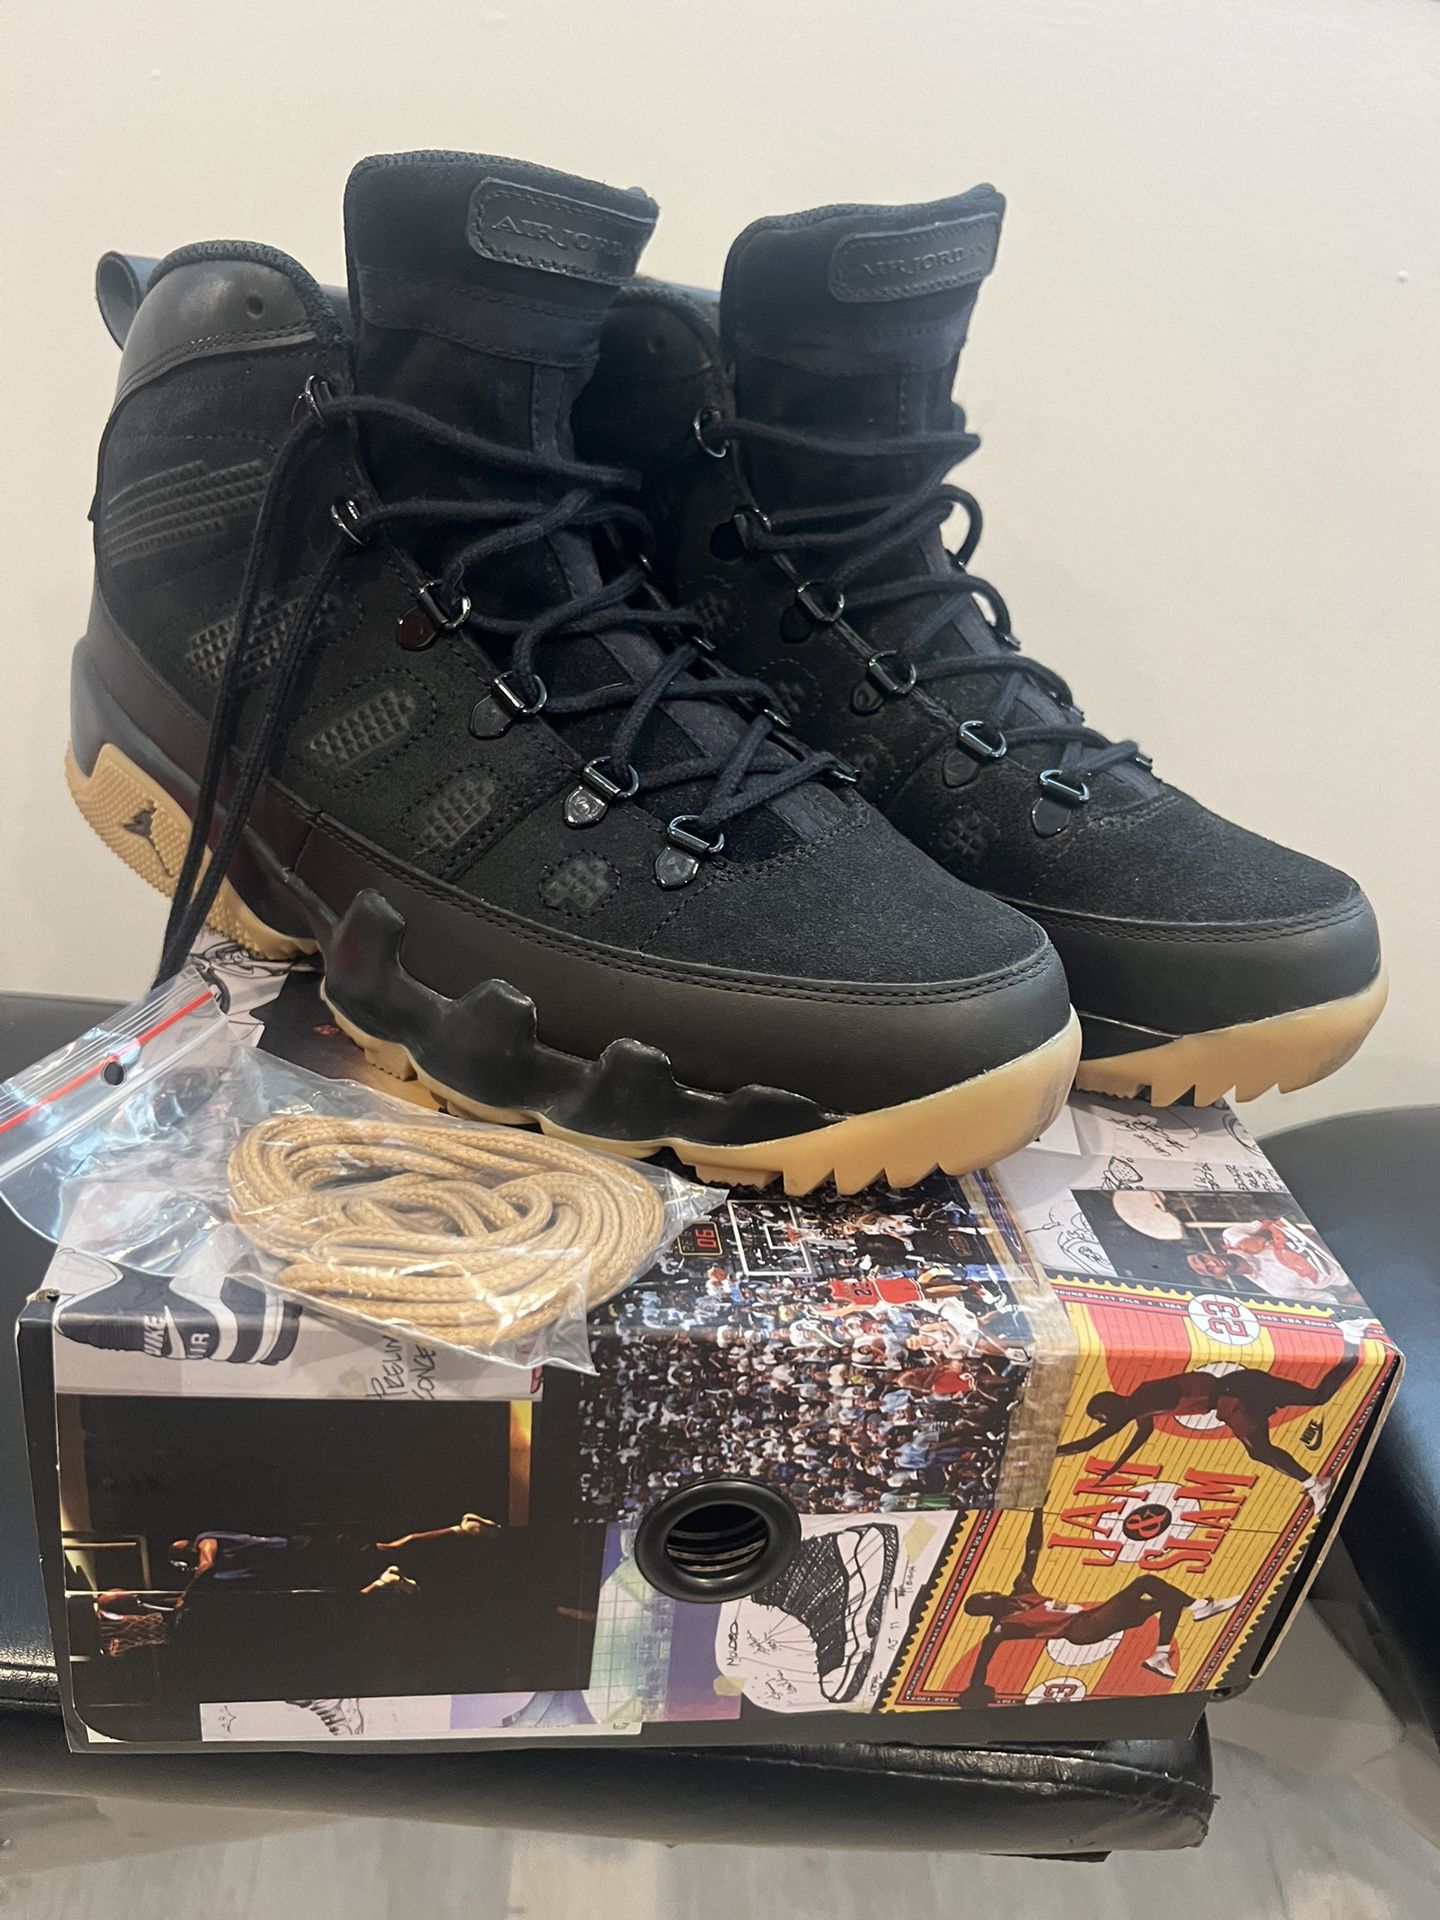 Jordan 9 NRG Boot Size 11 160$ OBO 